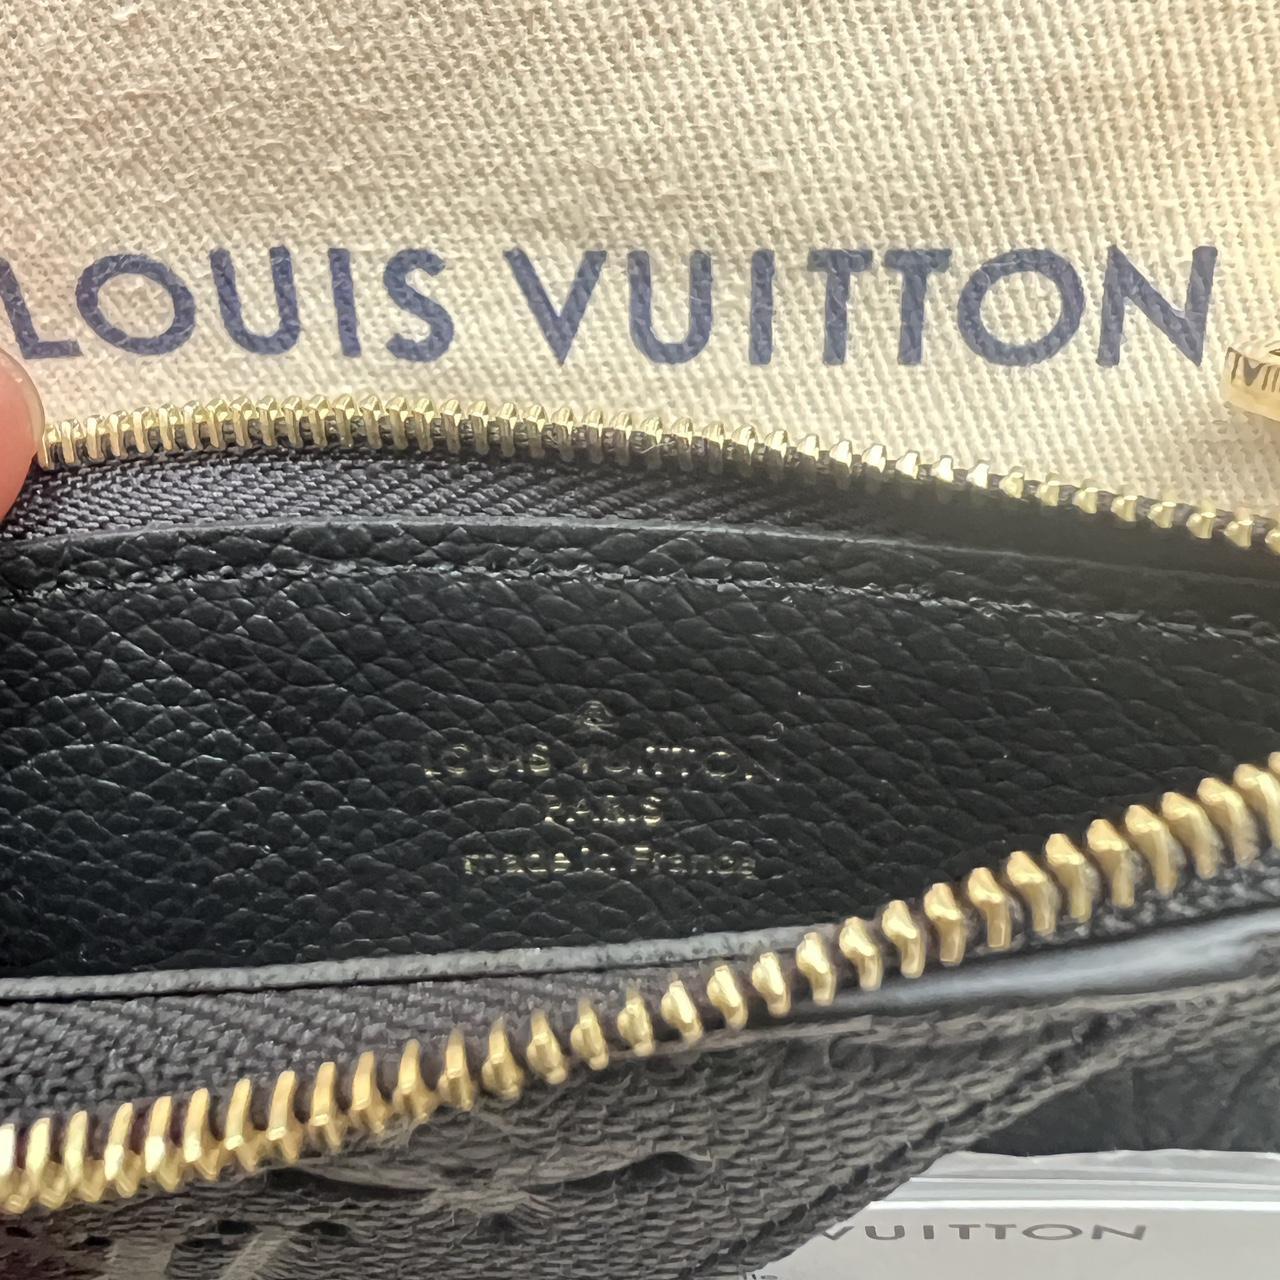 Louis Vuitton Vernis Empreinte Burgundy Wallet 🔱 • - Depop